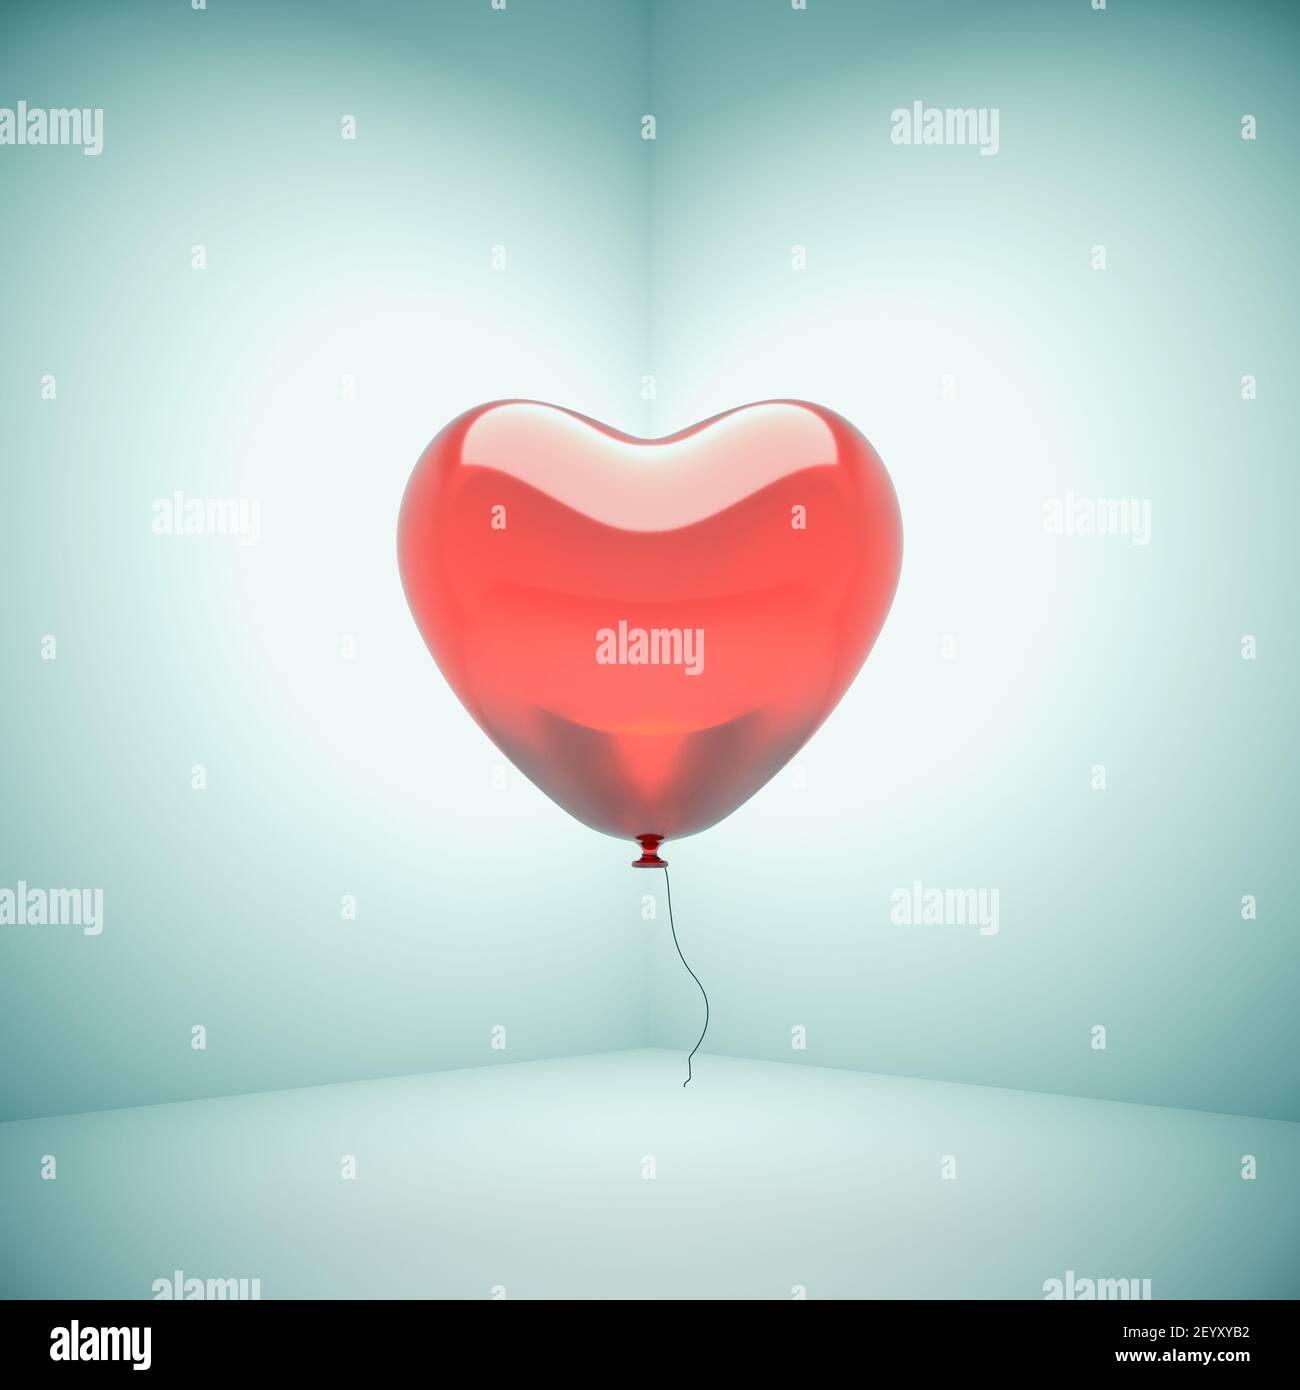 Heart shaped balloon Stock Photo